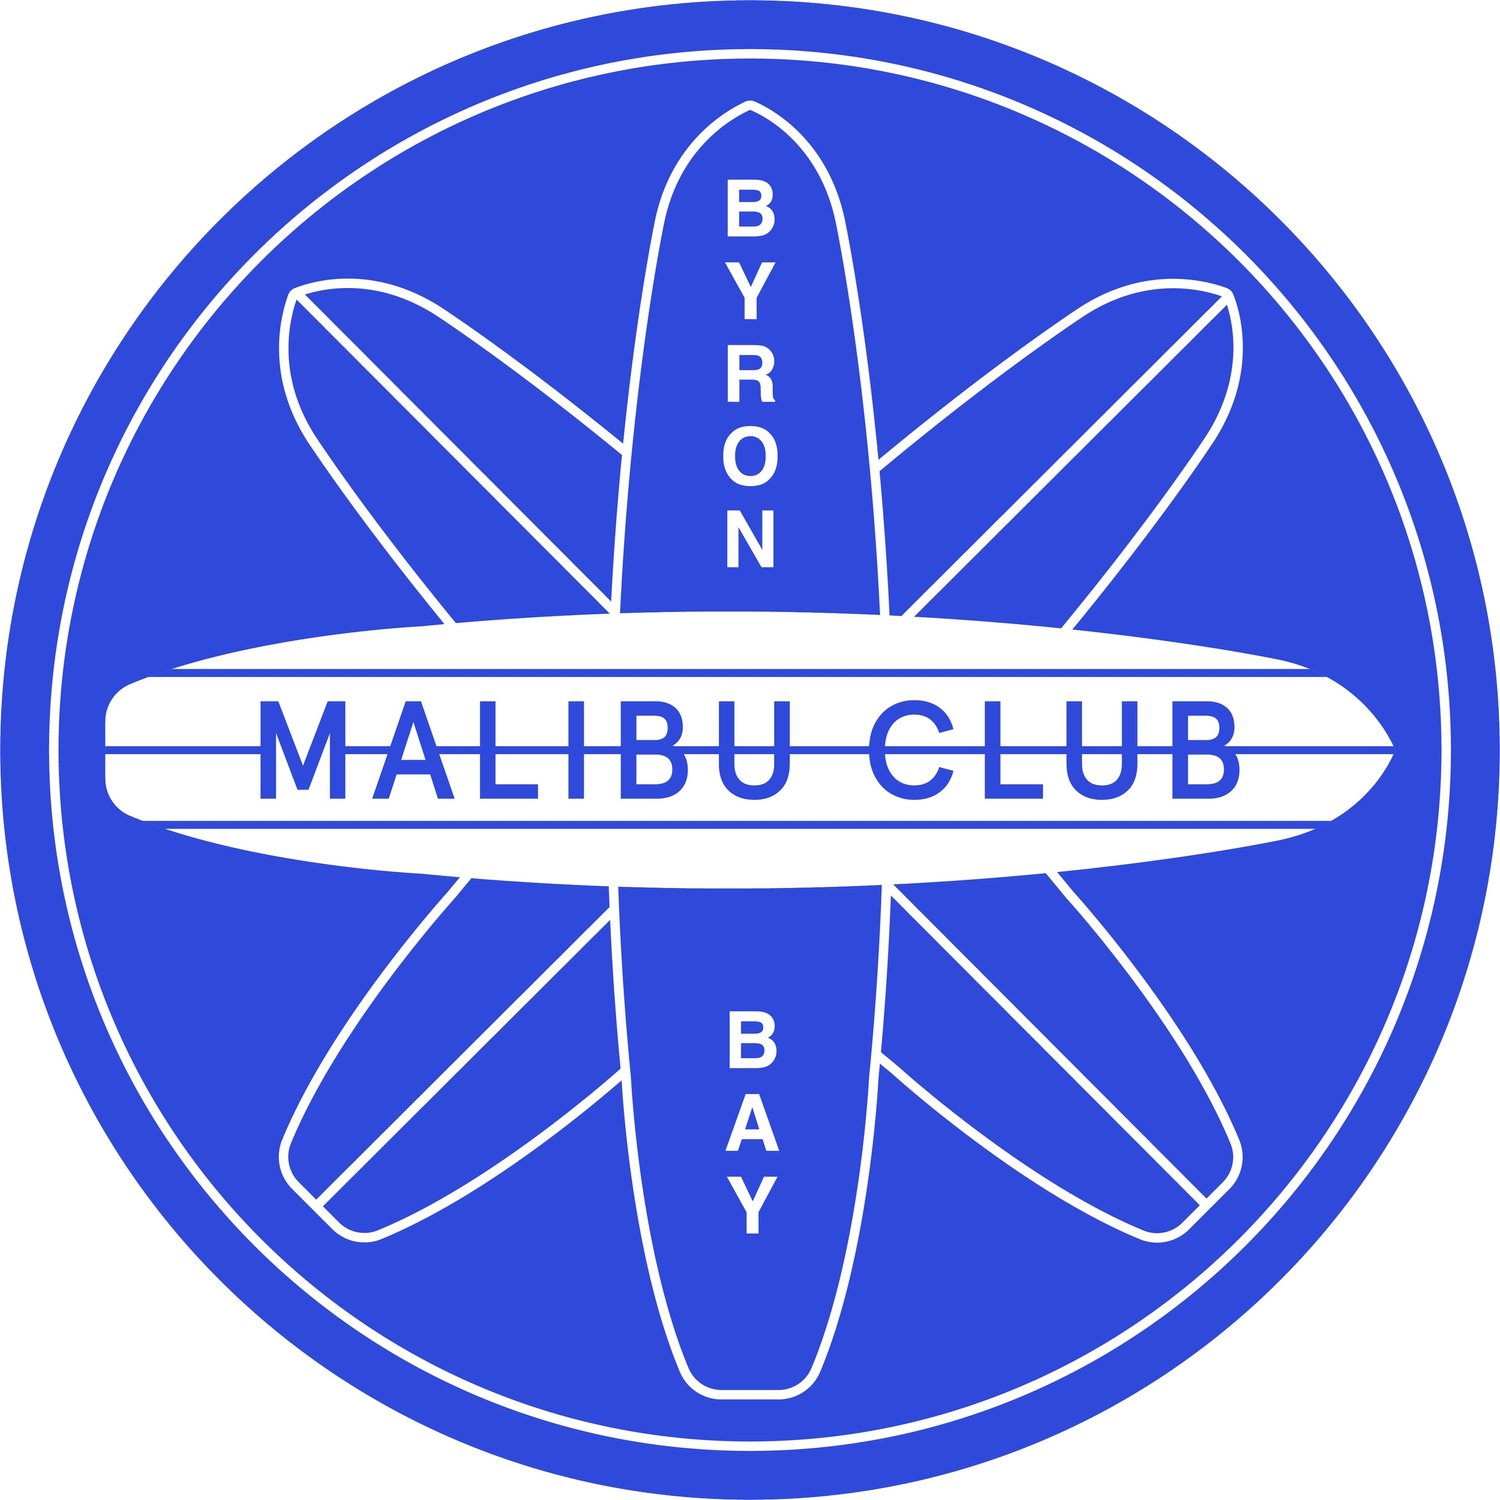 BYRON BAY MALIBU CLUB